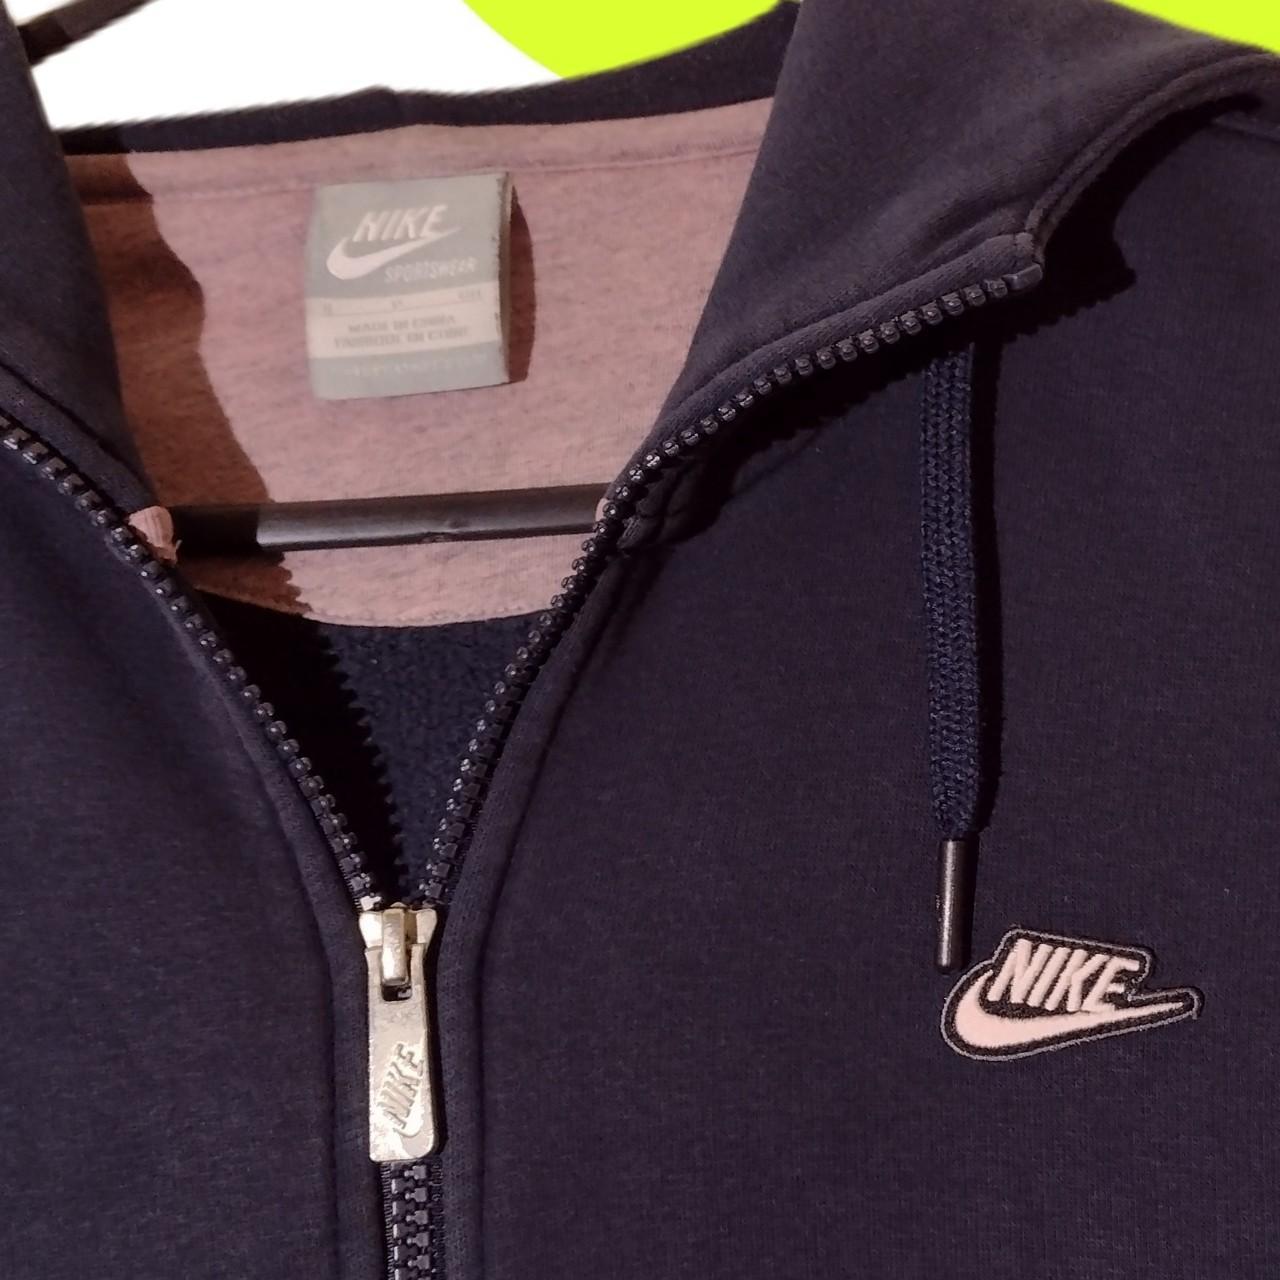 Nike Sportswear Zip Hoodie Jacket Size S... - Depop